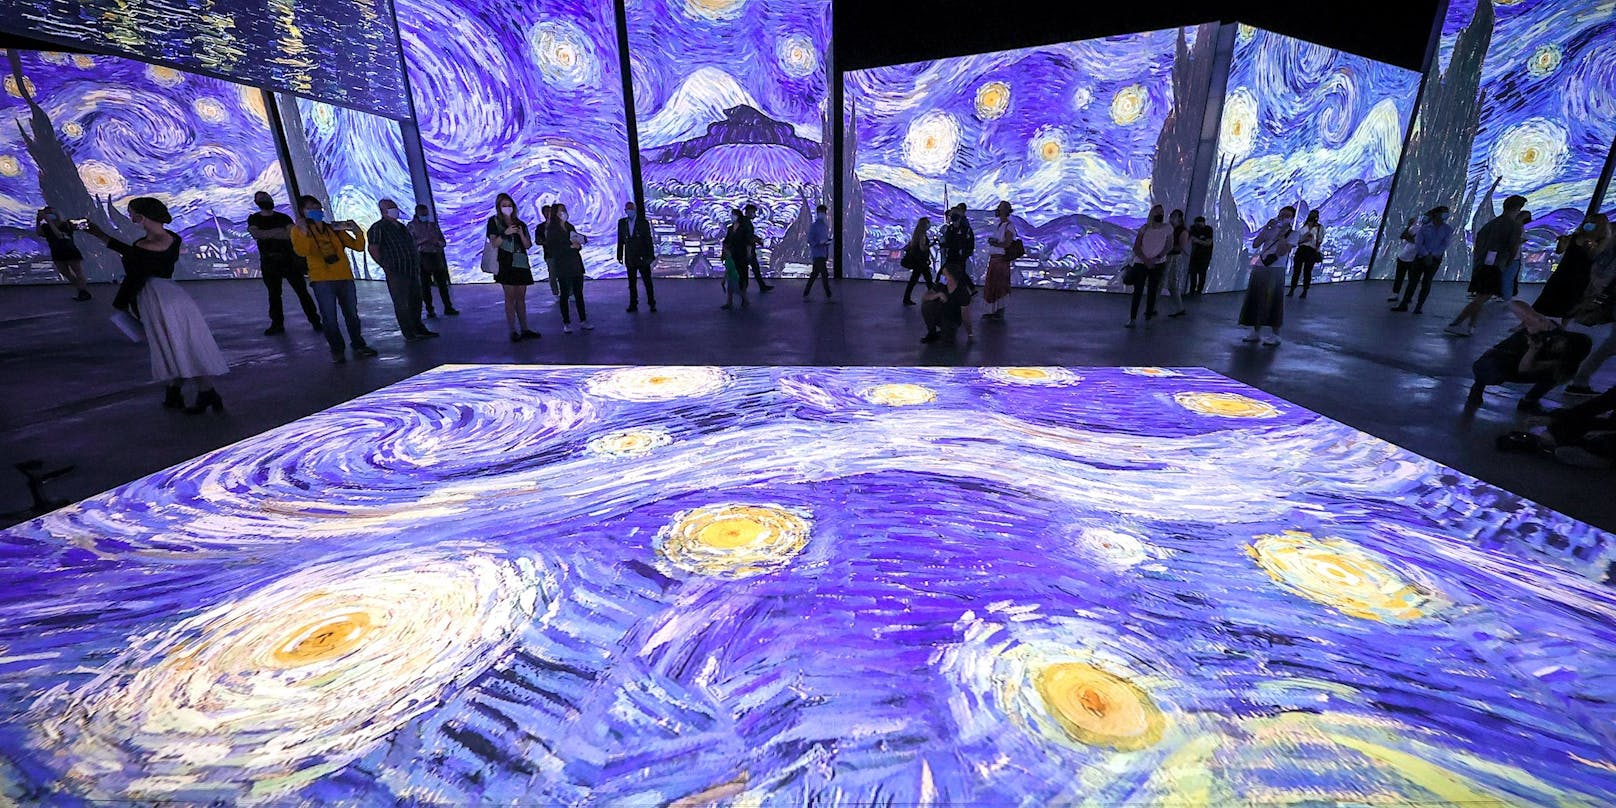 Die Bilder von Van Gogh erwachen in der Ausstellung zum Leben.